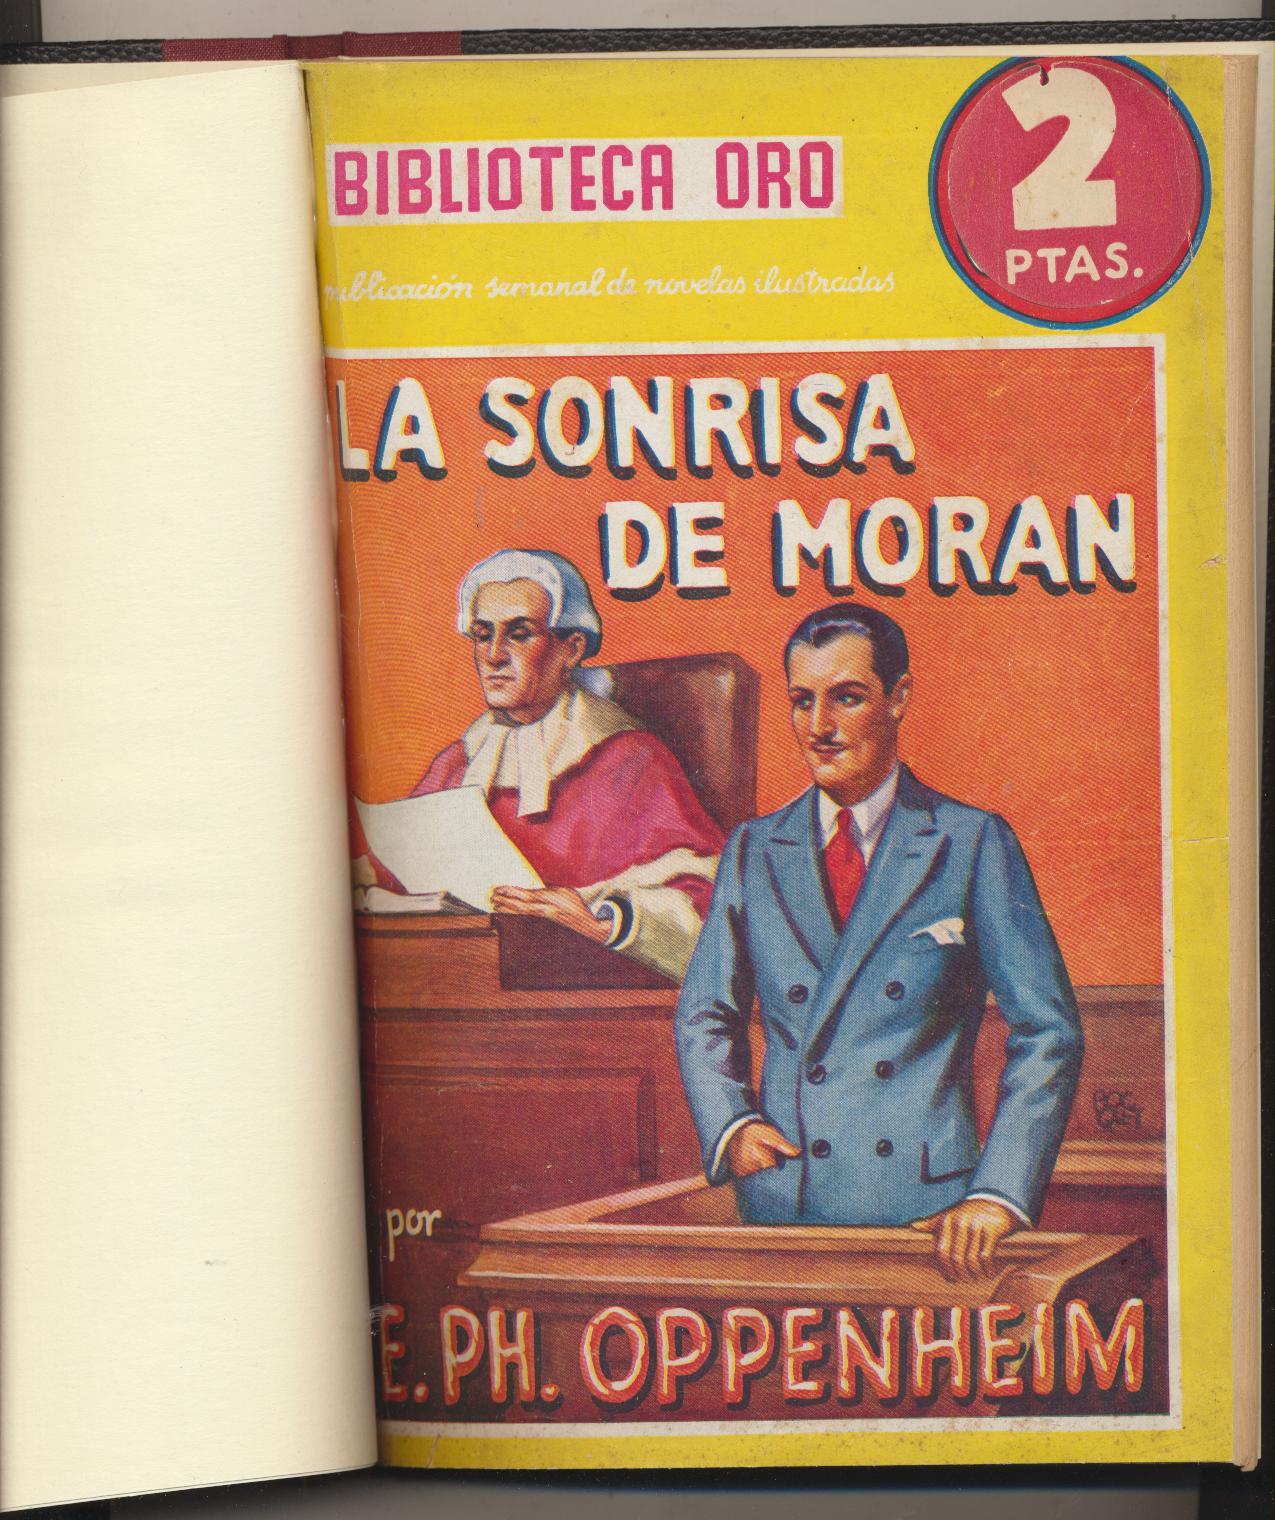 Biblioteca Oro nº 27. La sonrisa de Moran por E. Ph. Oppenheim